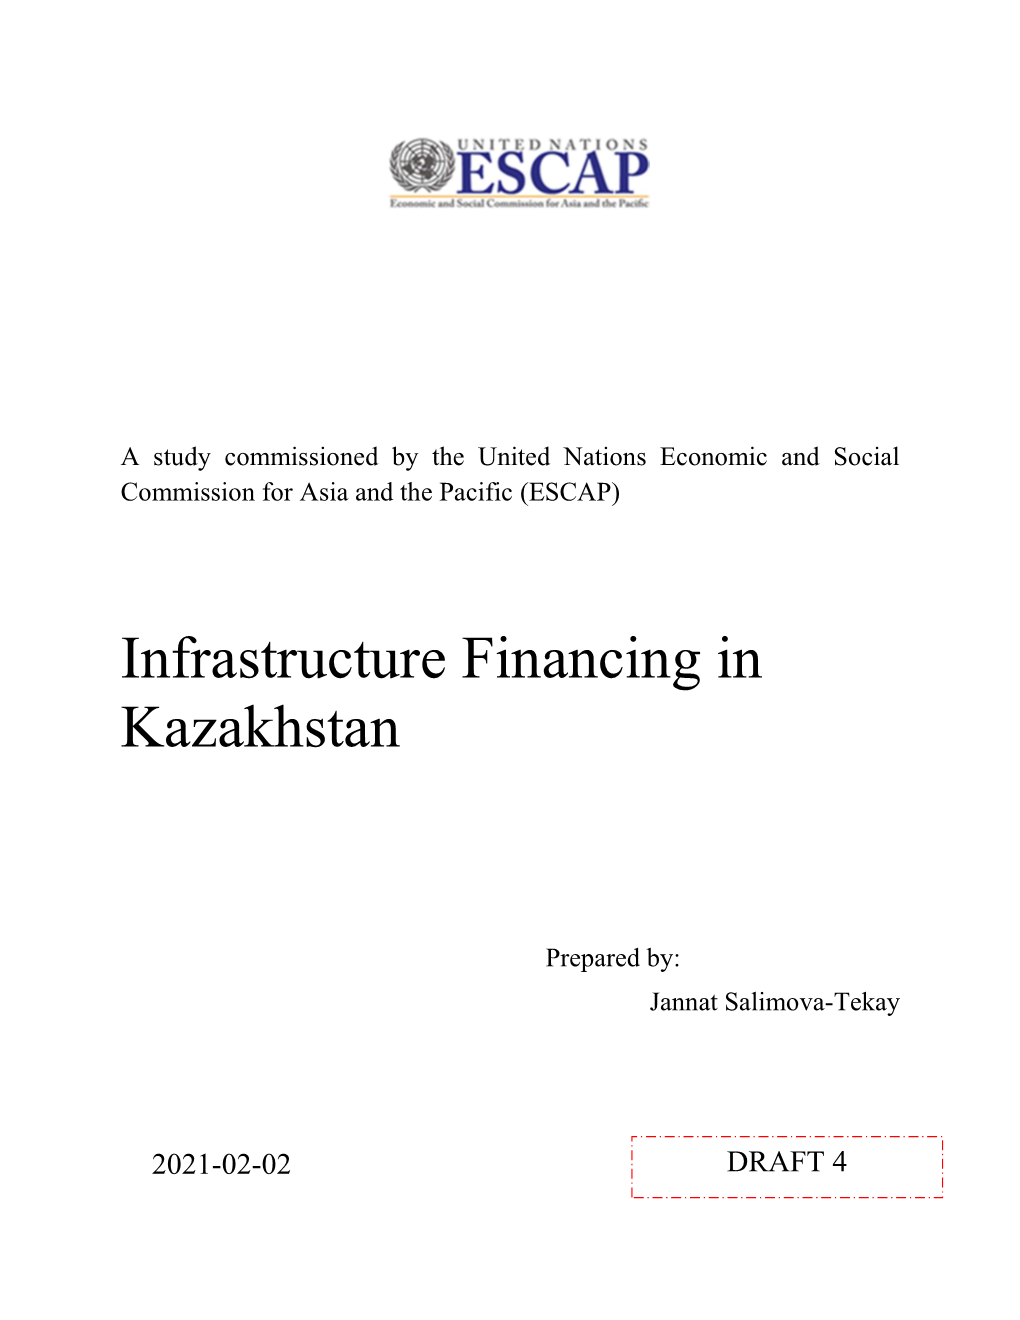 Infrastructure Financing in Kazakhstan